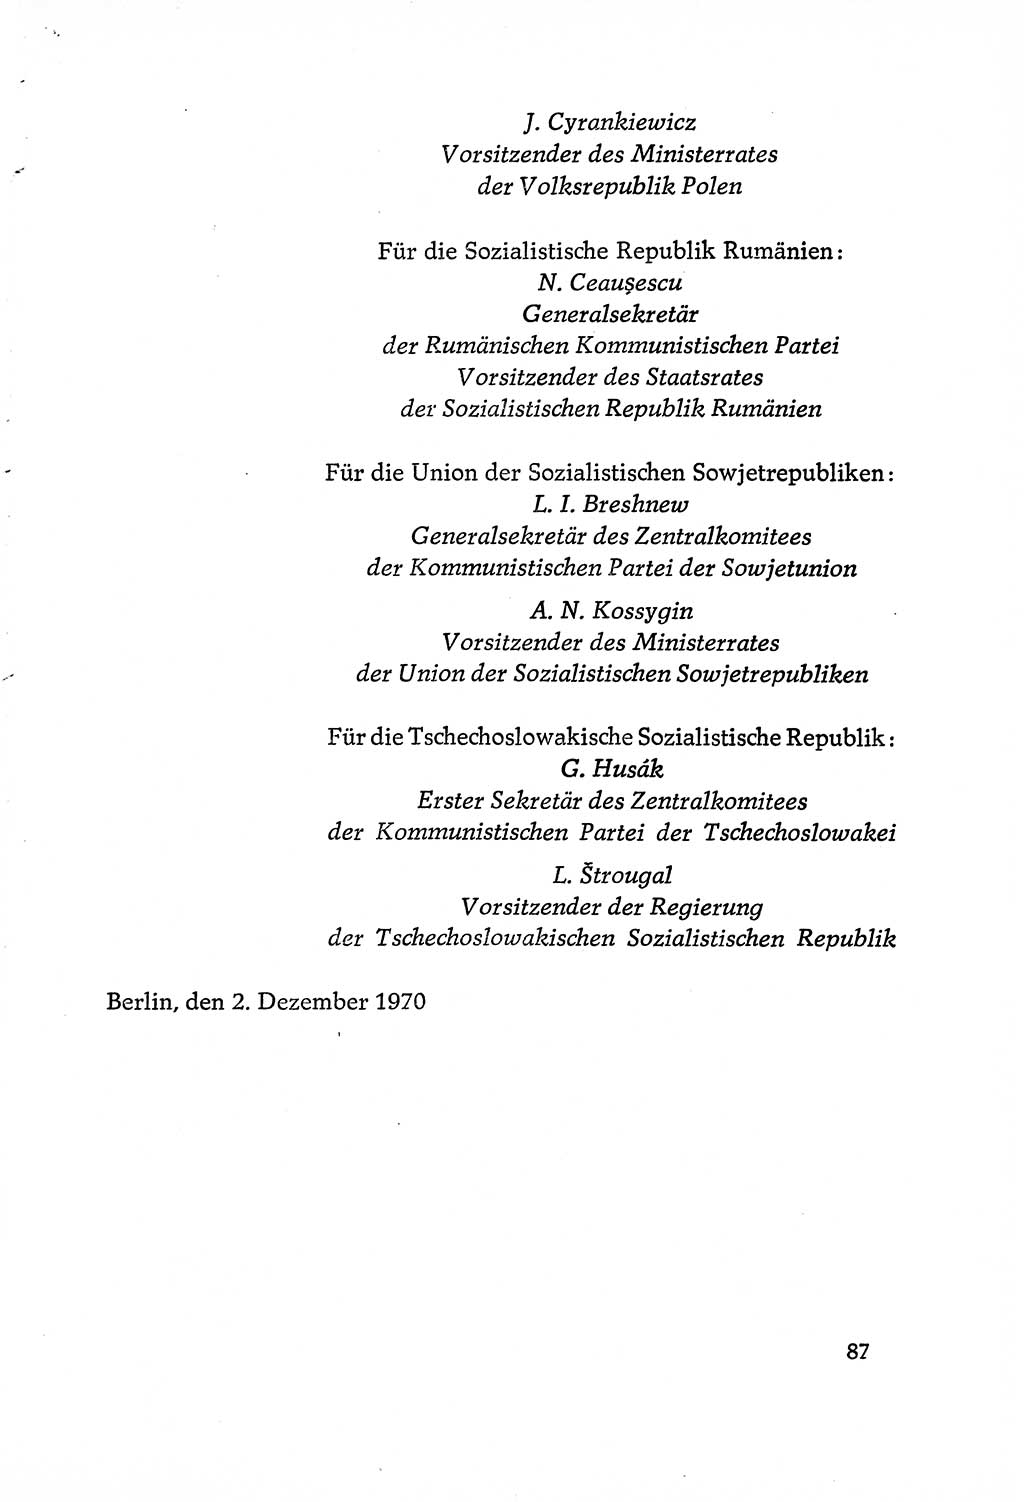 Dokumente der Sozialistischen Einheitspartei Deutschlands (SED) [Deutsche Demokratische Republik (DDR)] 1970-1971, Seite 87 (Dok. SED DDR 1970-1971, S. 87)